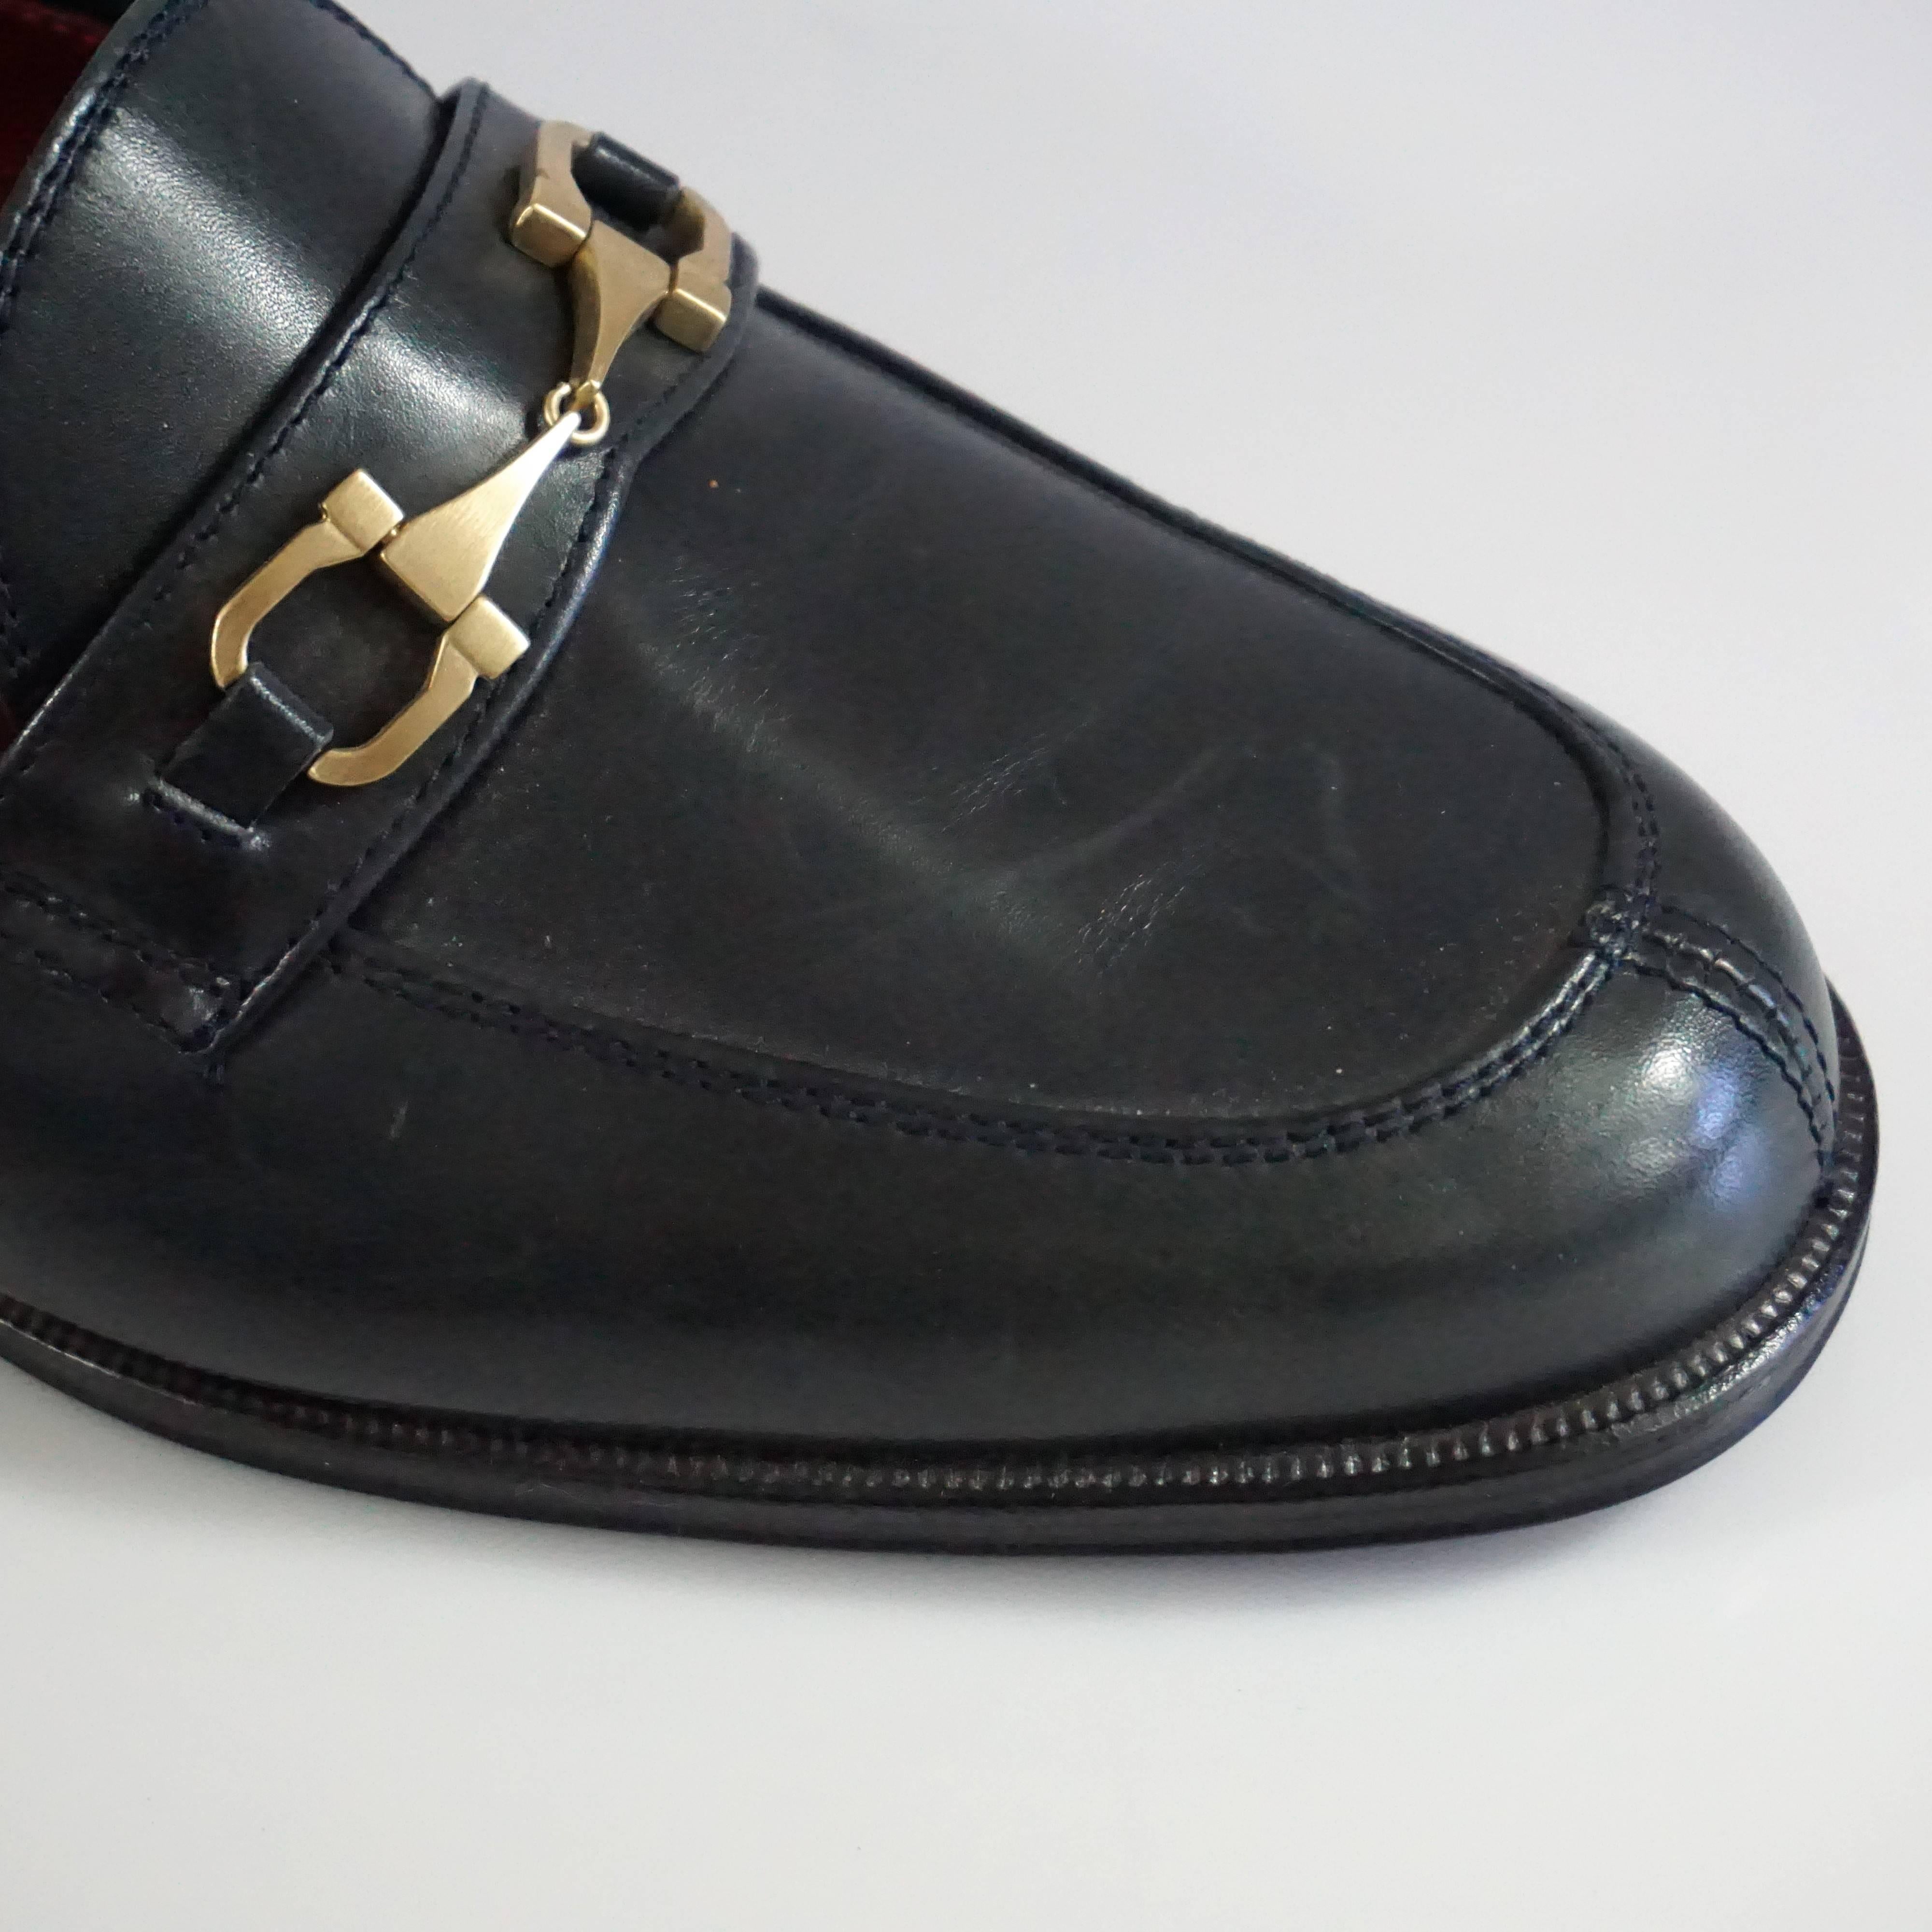 Salvatore Ferragamo Black Leather Loafers - 6.5 B 5